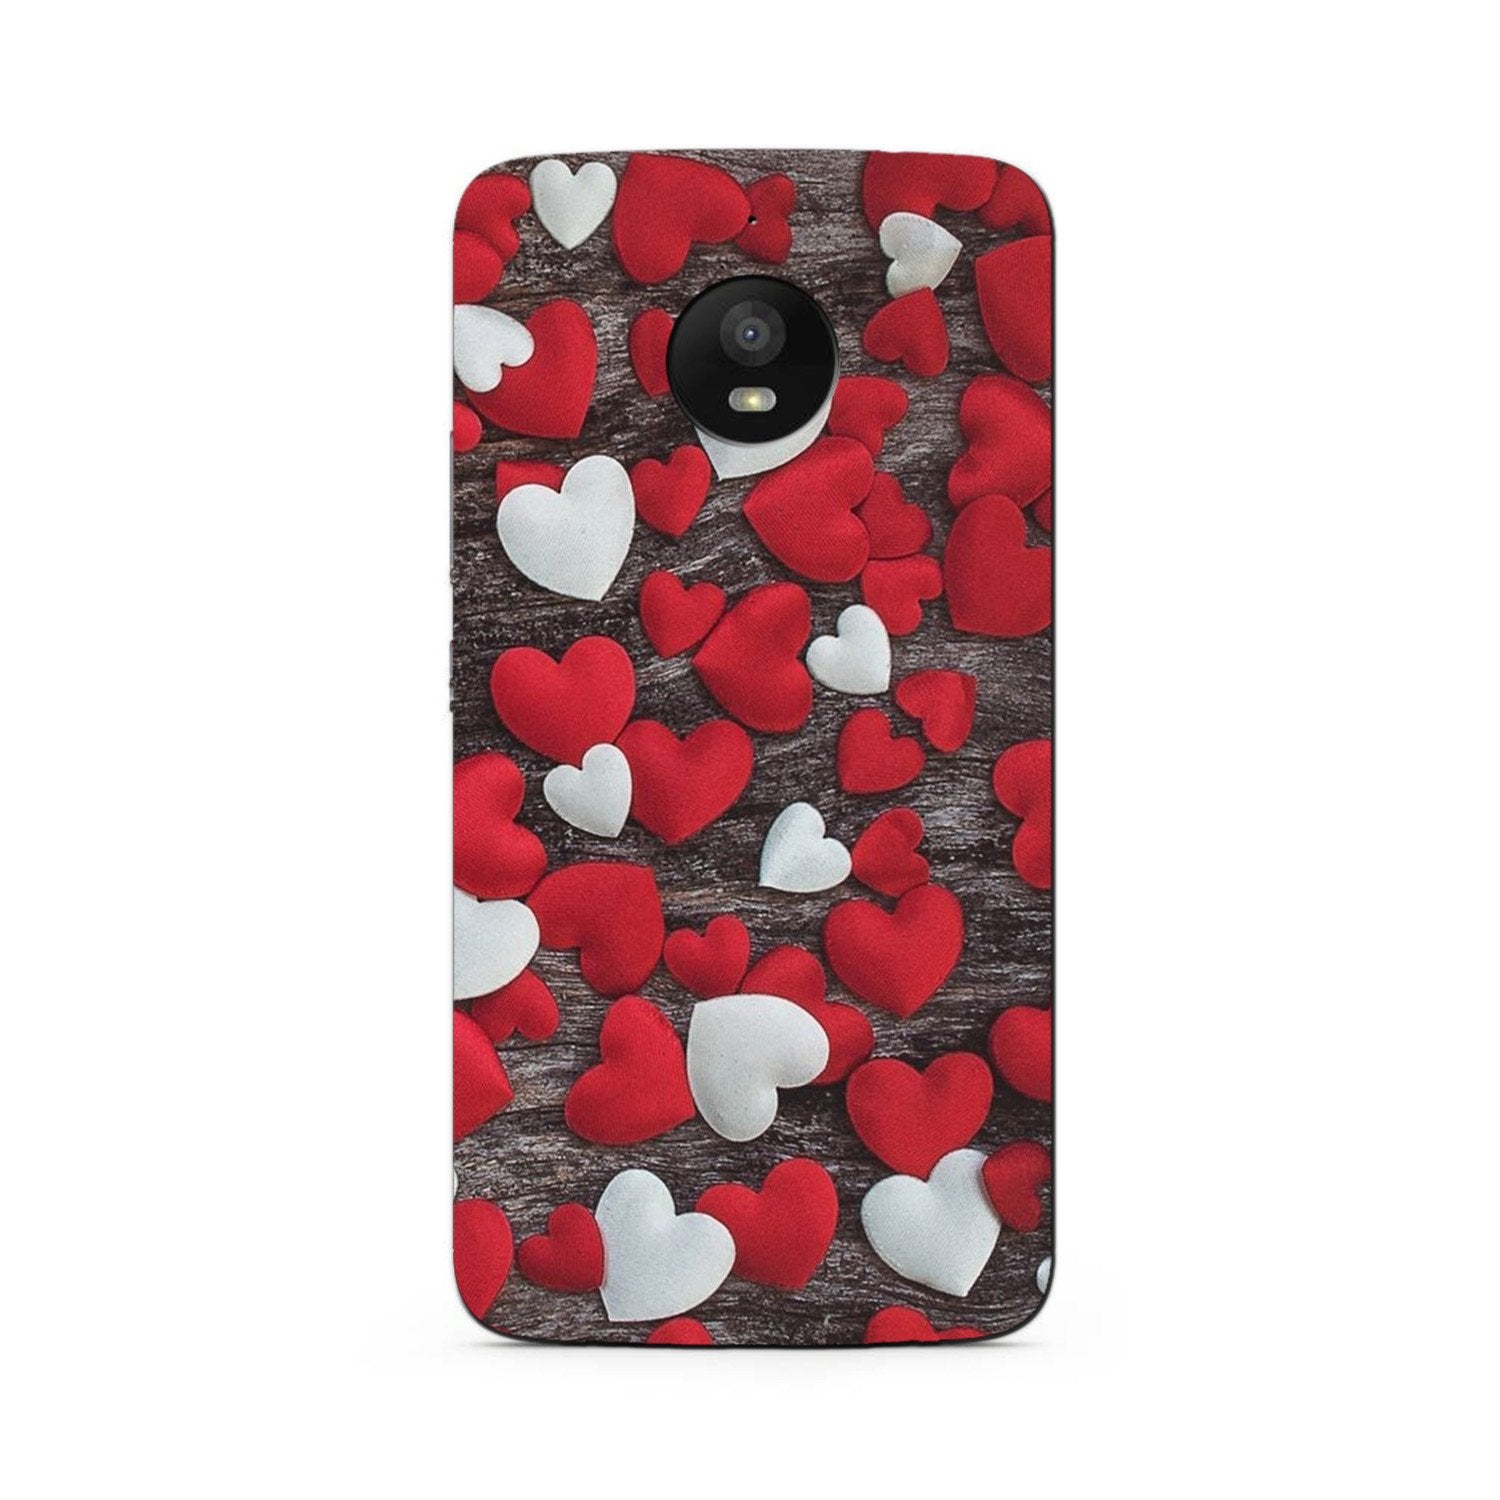 Red White Hearts Case for Moto G5s Plus  (Design - 105)